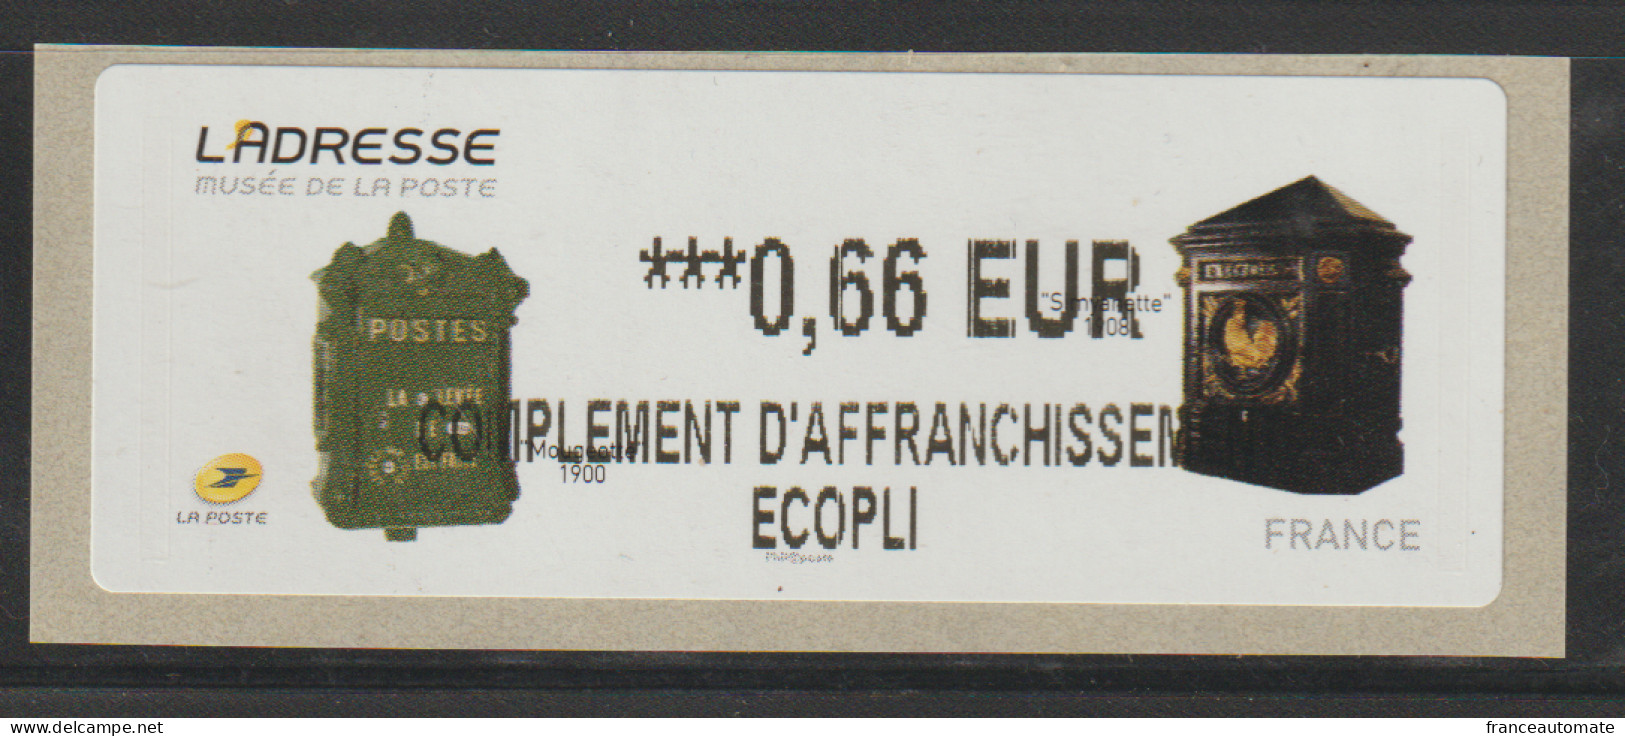 Atm, Lisa 2, Mention COMPLEMENT D'AFFRANCHISSEMENT ECOPLI, 0.66€,  Musée De La Poste, Boite à Lettres, 19/03/2015, - 2010-... Illustrated Franking Labels